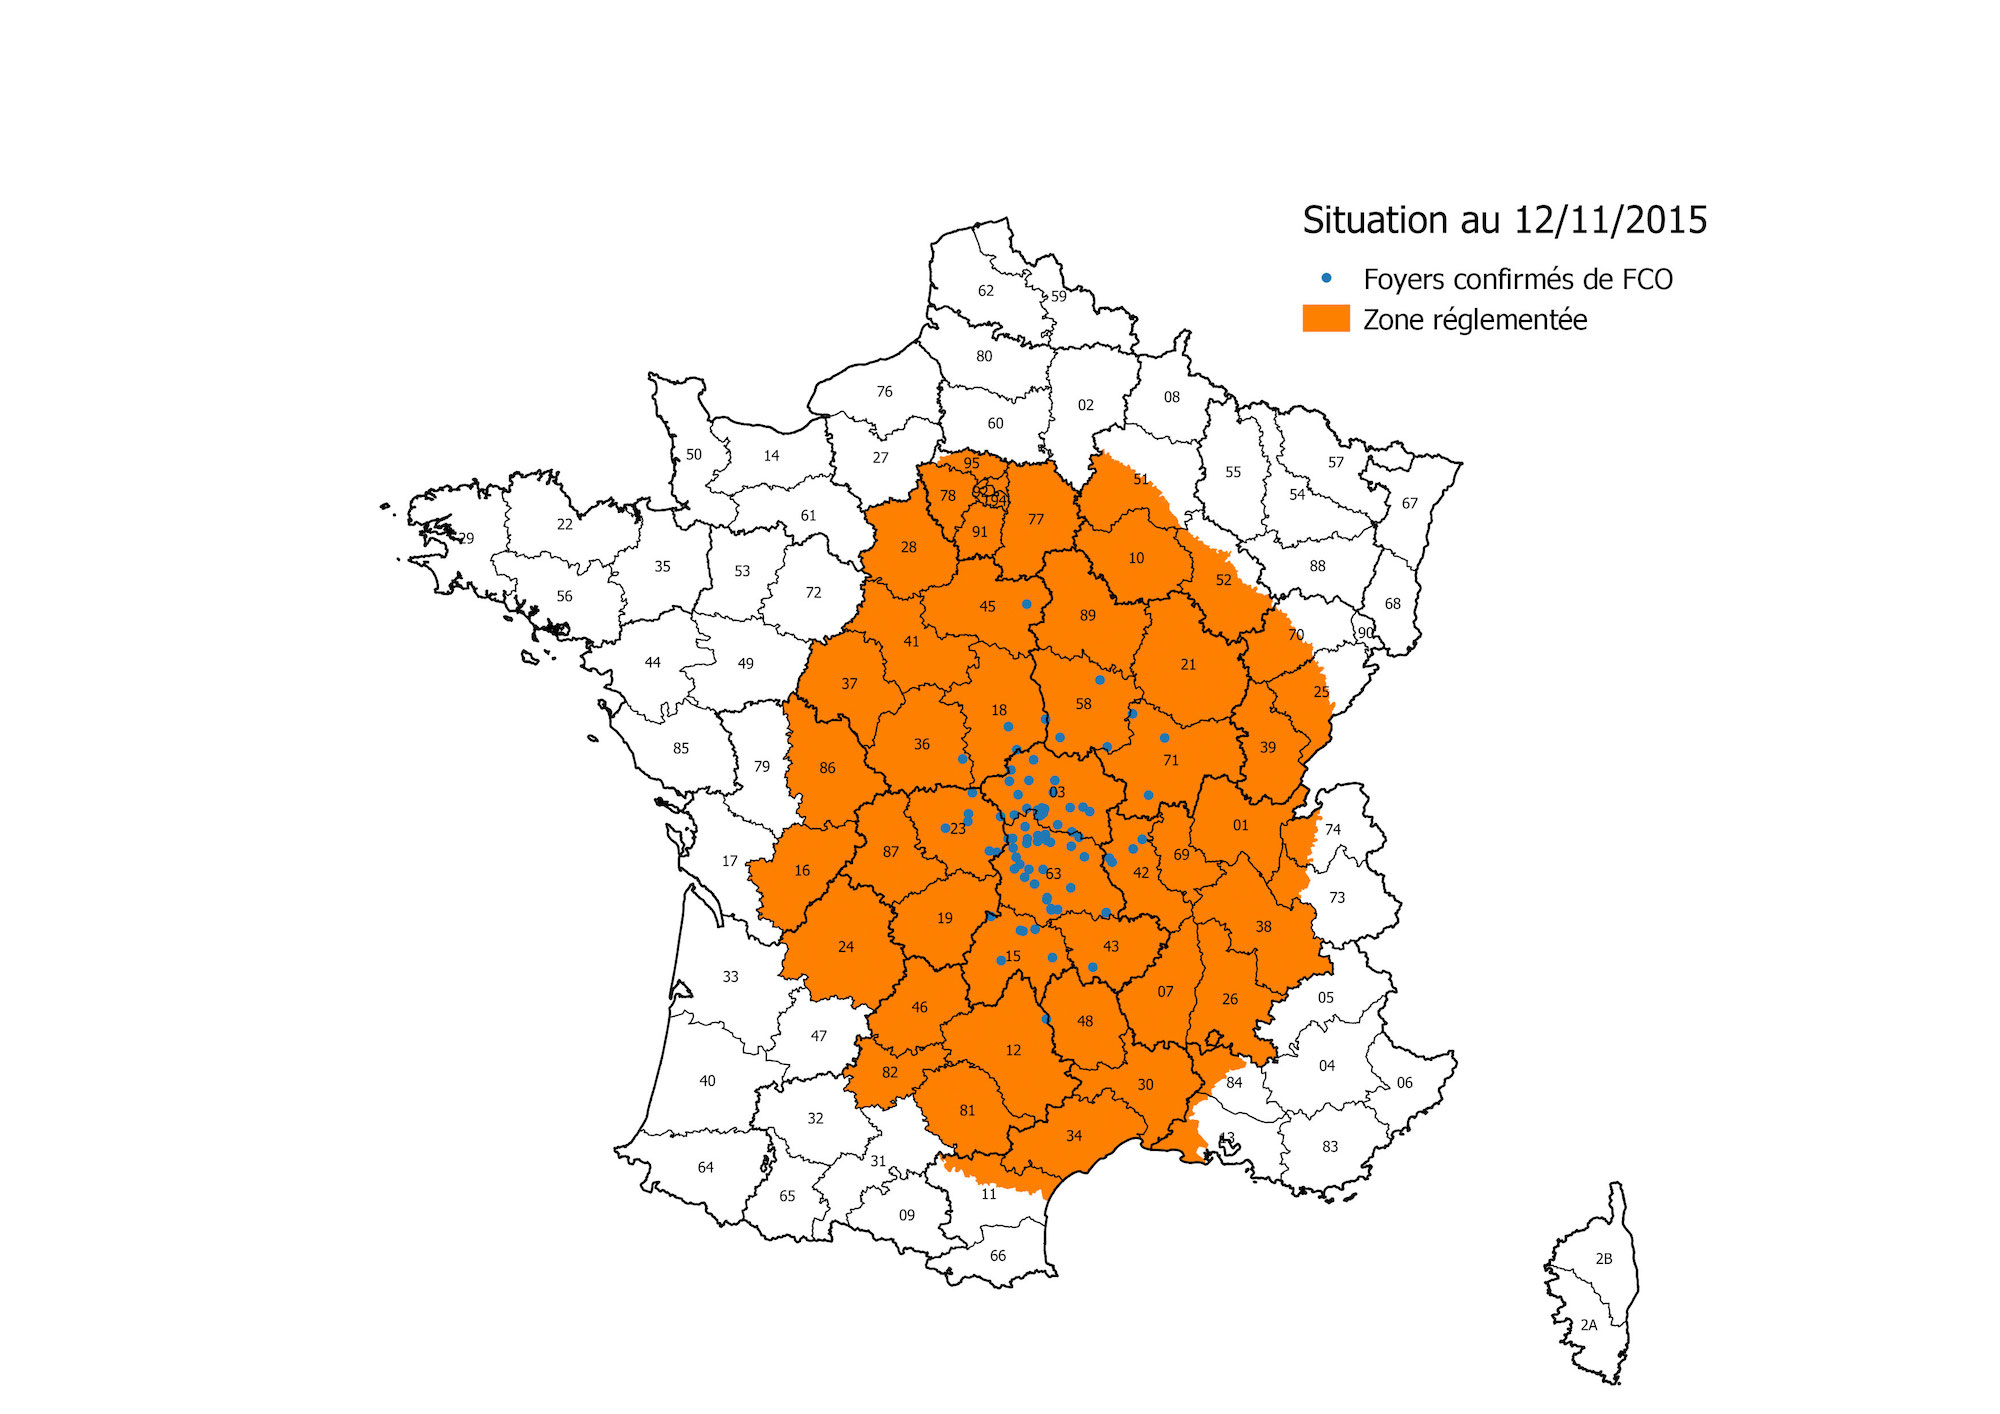 Le 13 novembre 2015, un nouvel arrêté prend en compte la découverte de nouveaux cas de fièvre catarrhale ovine (FCO) de sérotype 8 dans le Cantal, l’Aveyron, la Haute-Loire et la Creuse